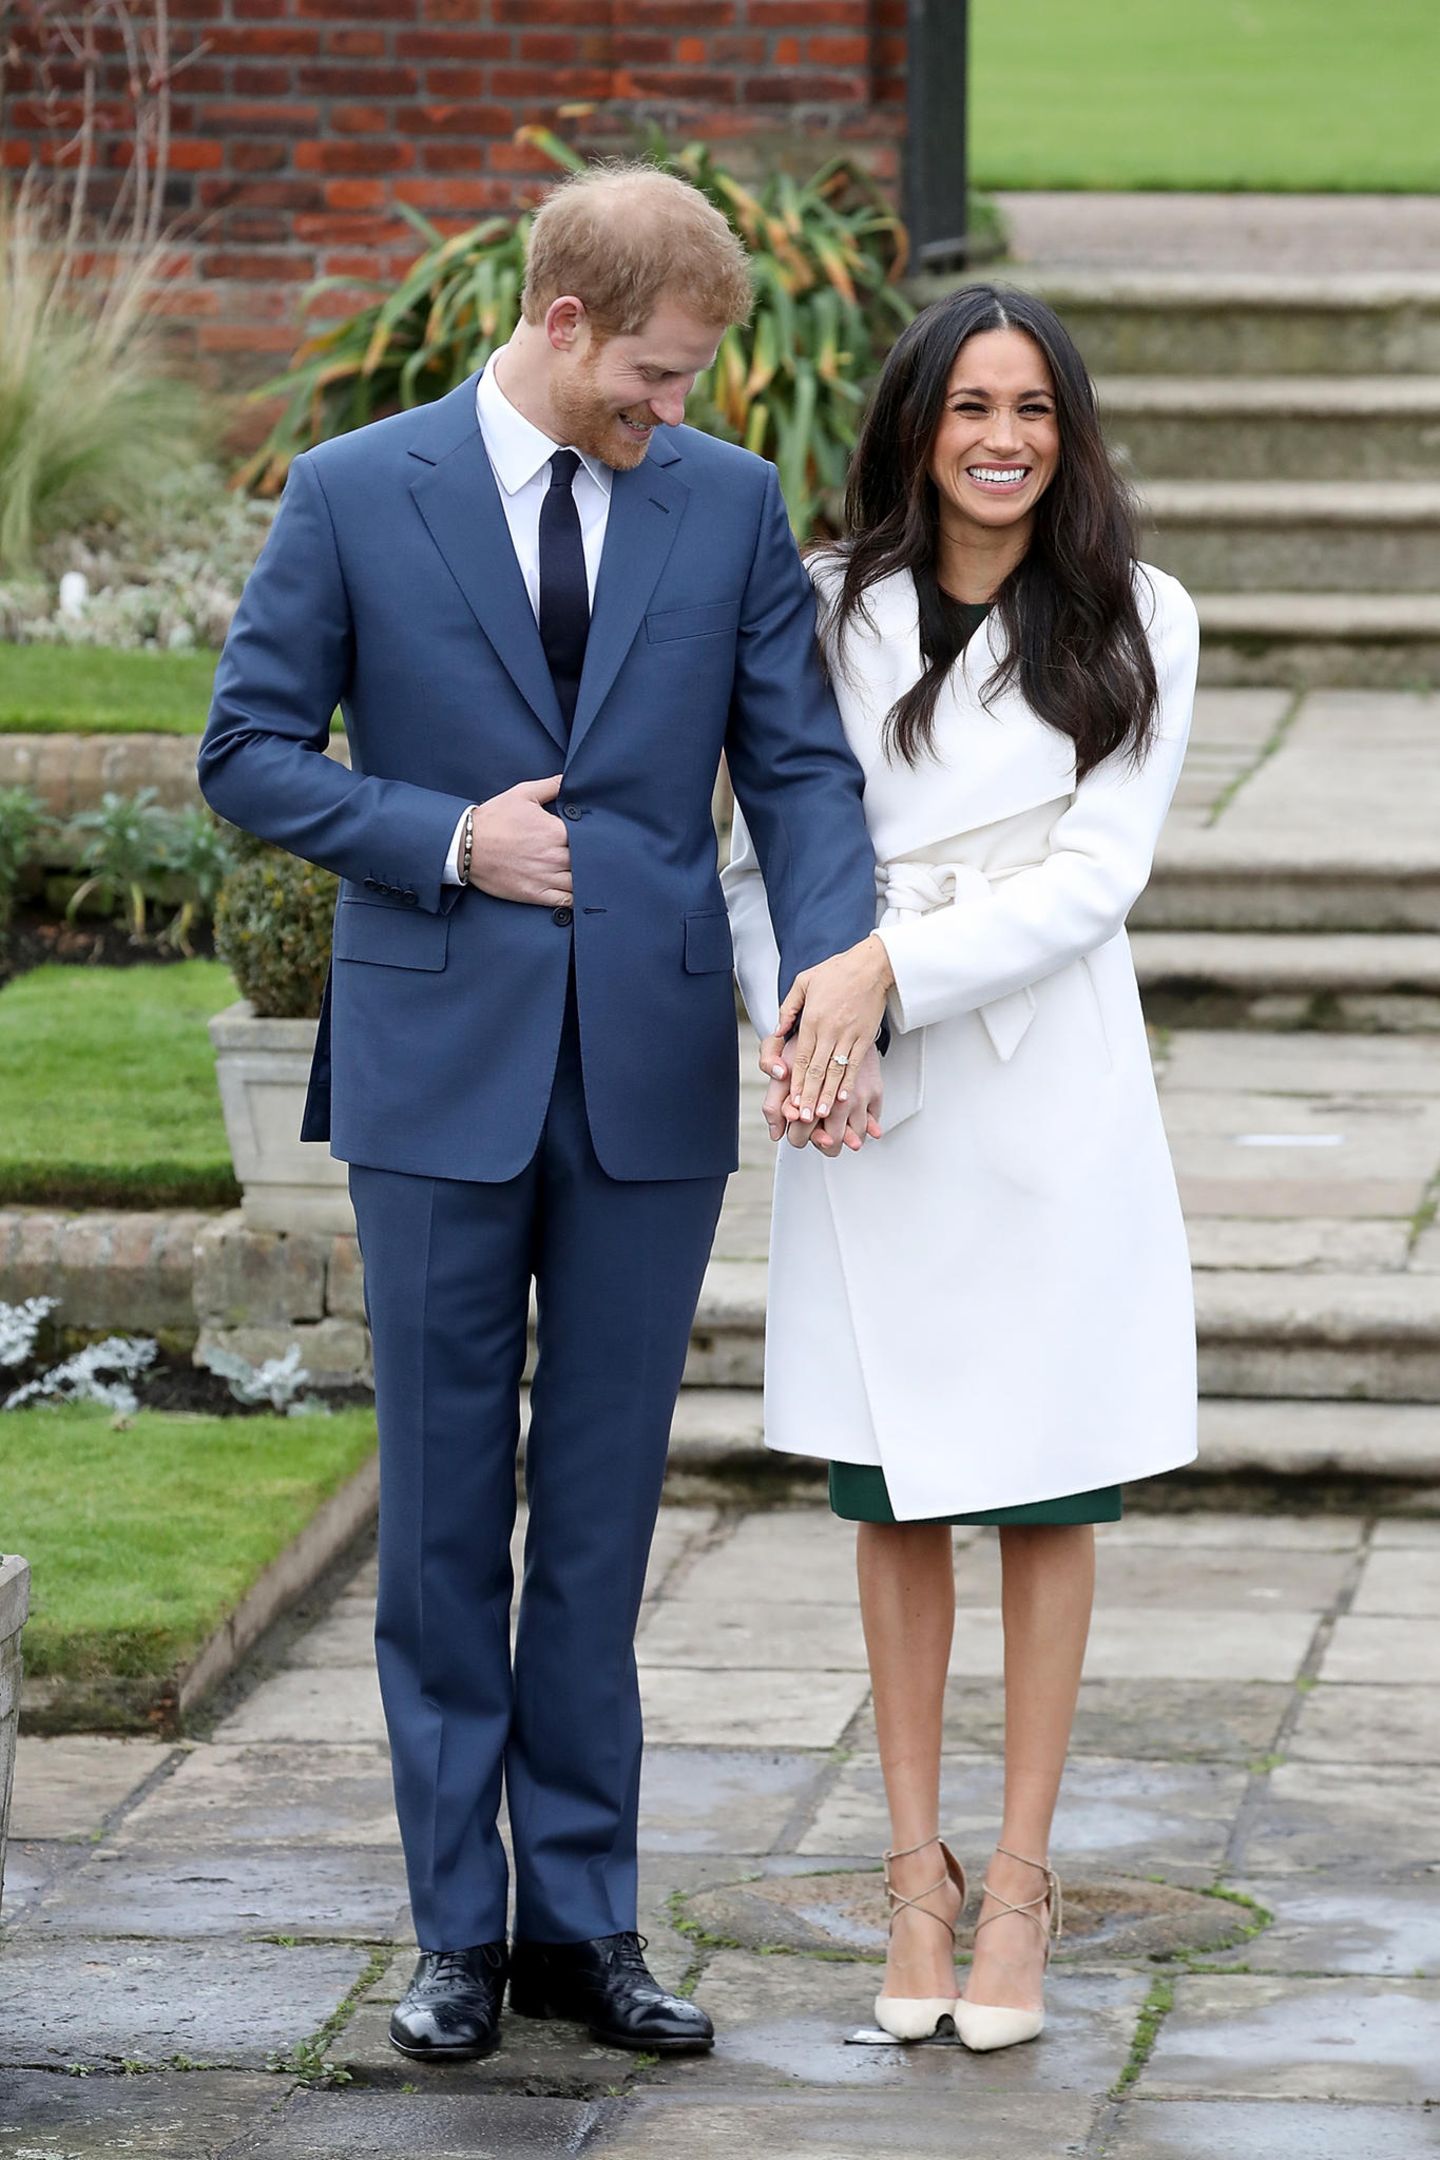 Prinz Harry und Meghan Markle strahlen bei dem offiziellen Auftritt nach ihrer Verlobung.